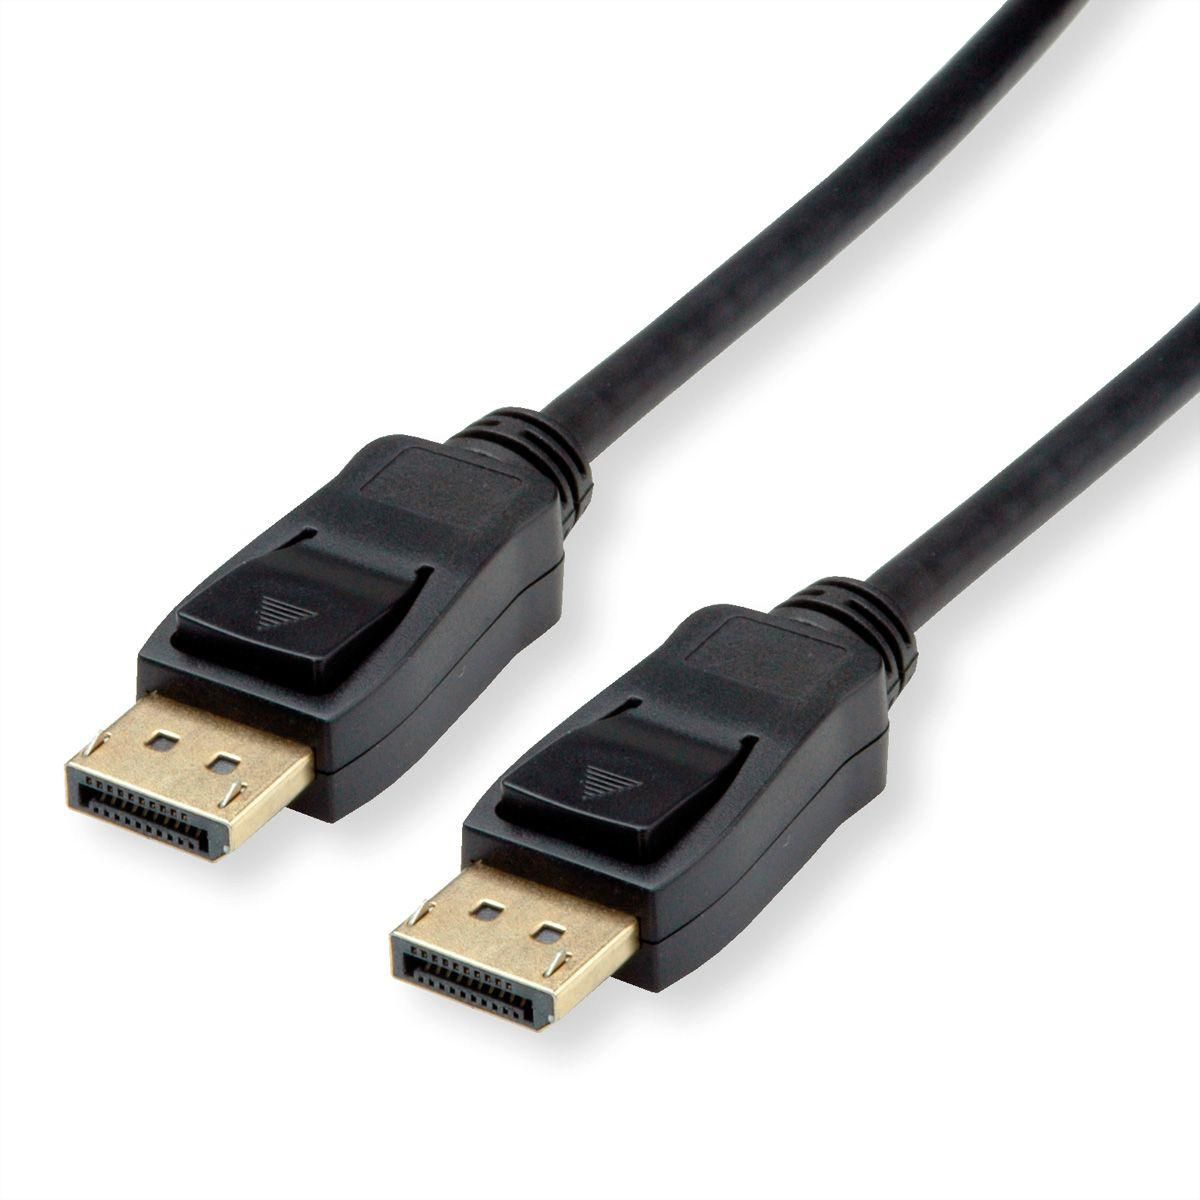 Value 11.99.5813 W128372660 Displayport Cable 5 M Black 